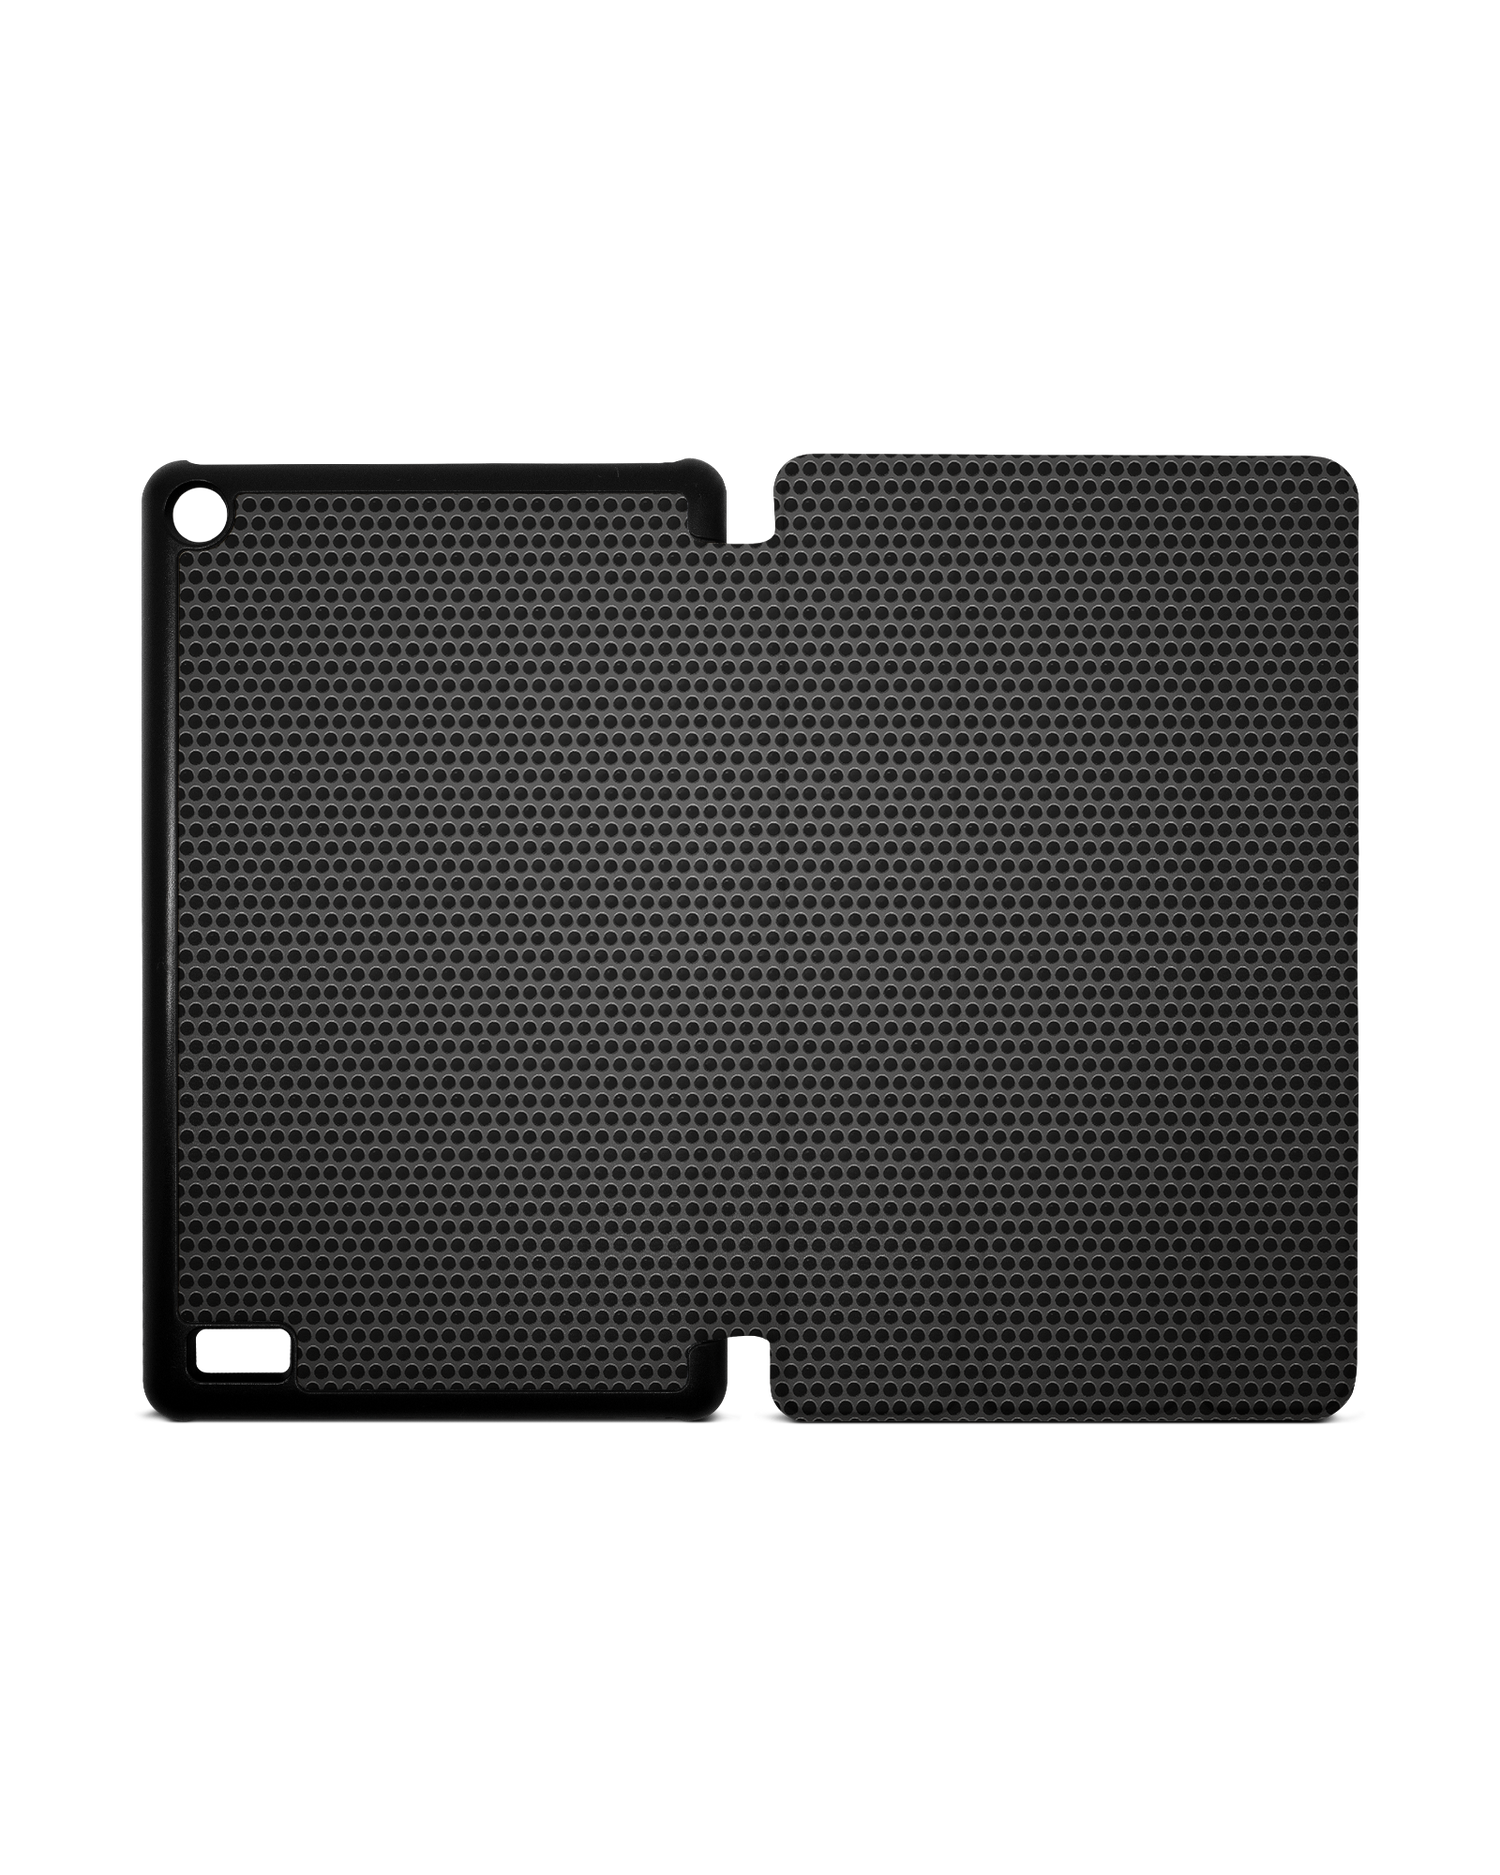 Carbon II Tablet Smart Case für Amazon Fire 7: Aufgeklappt